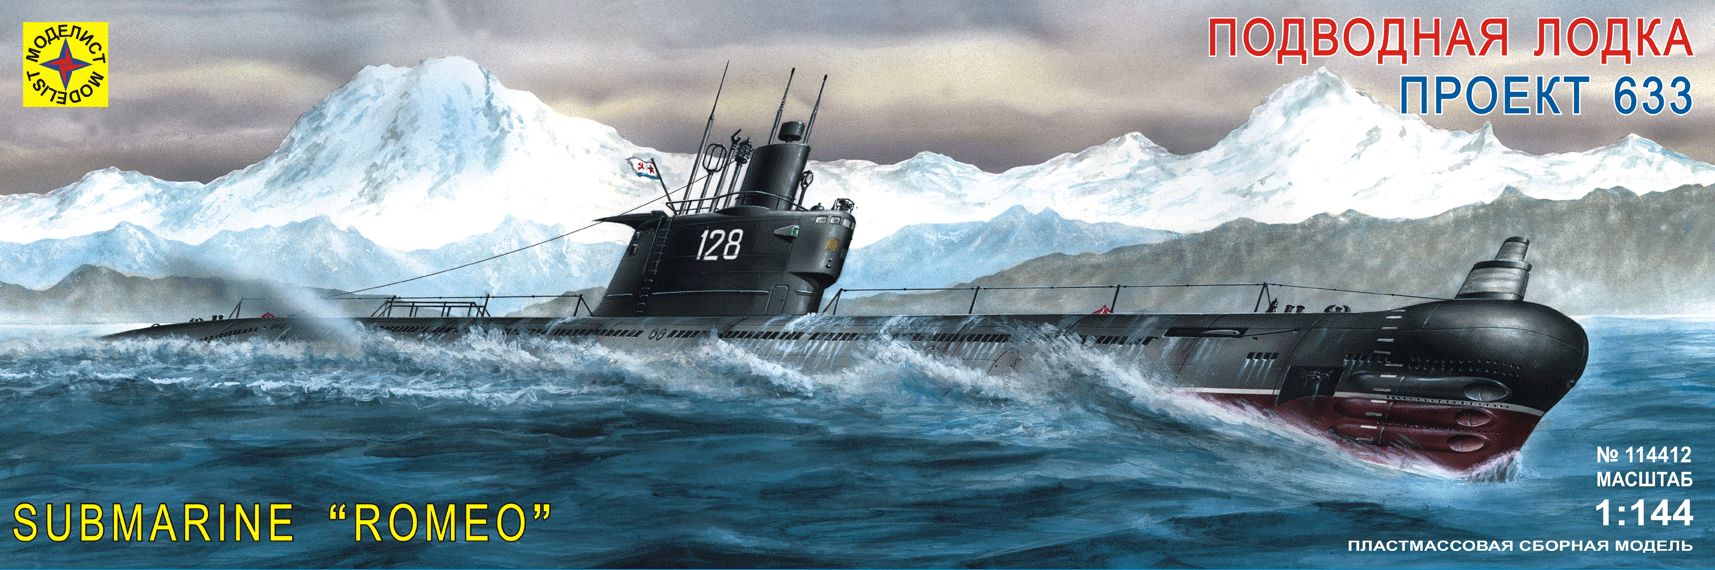 114412  флот  Подводная лодка проект 633. (1:144)